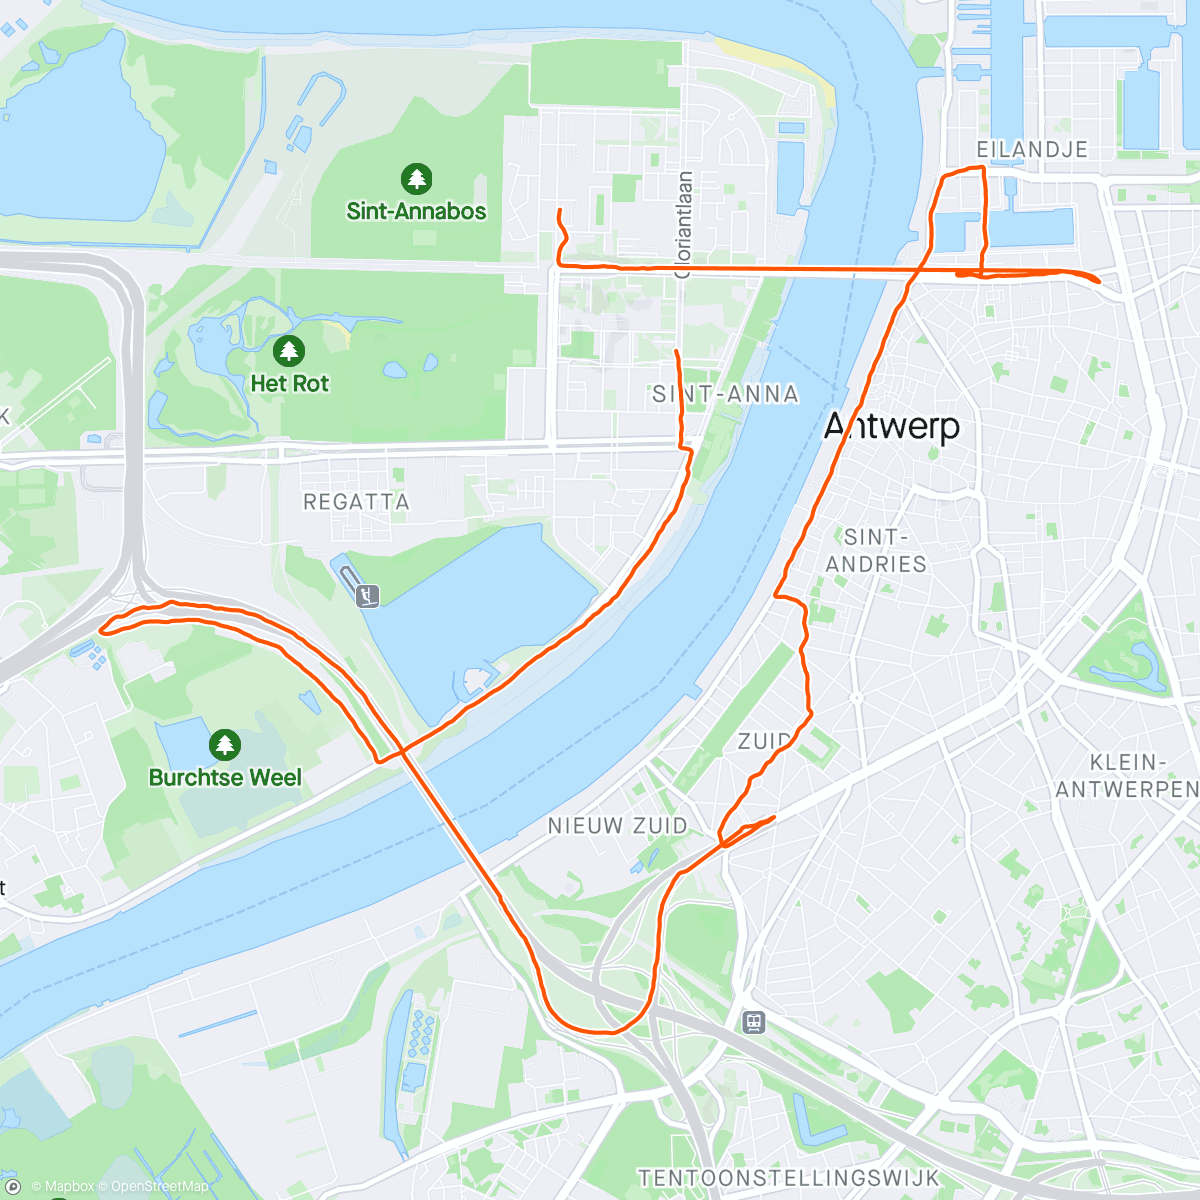 Mapa de la actividad, Antwerp 10 miles